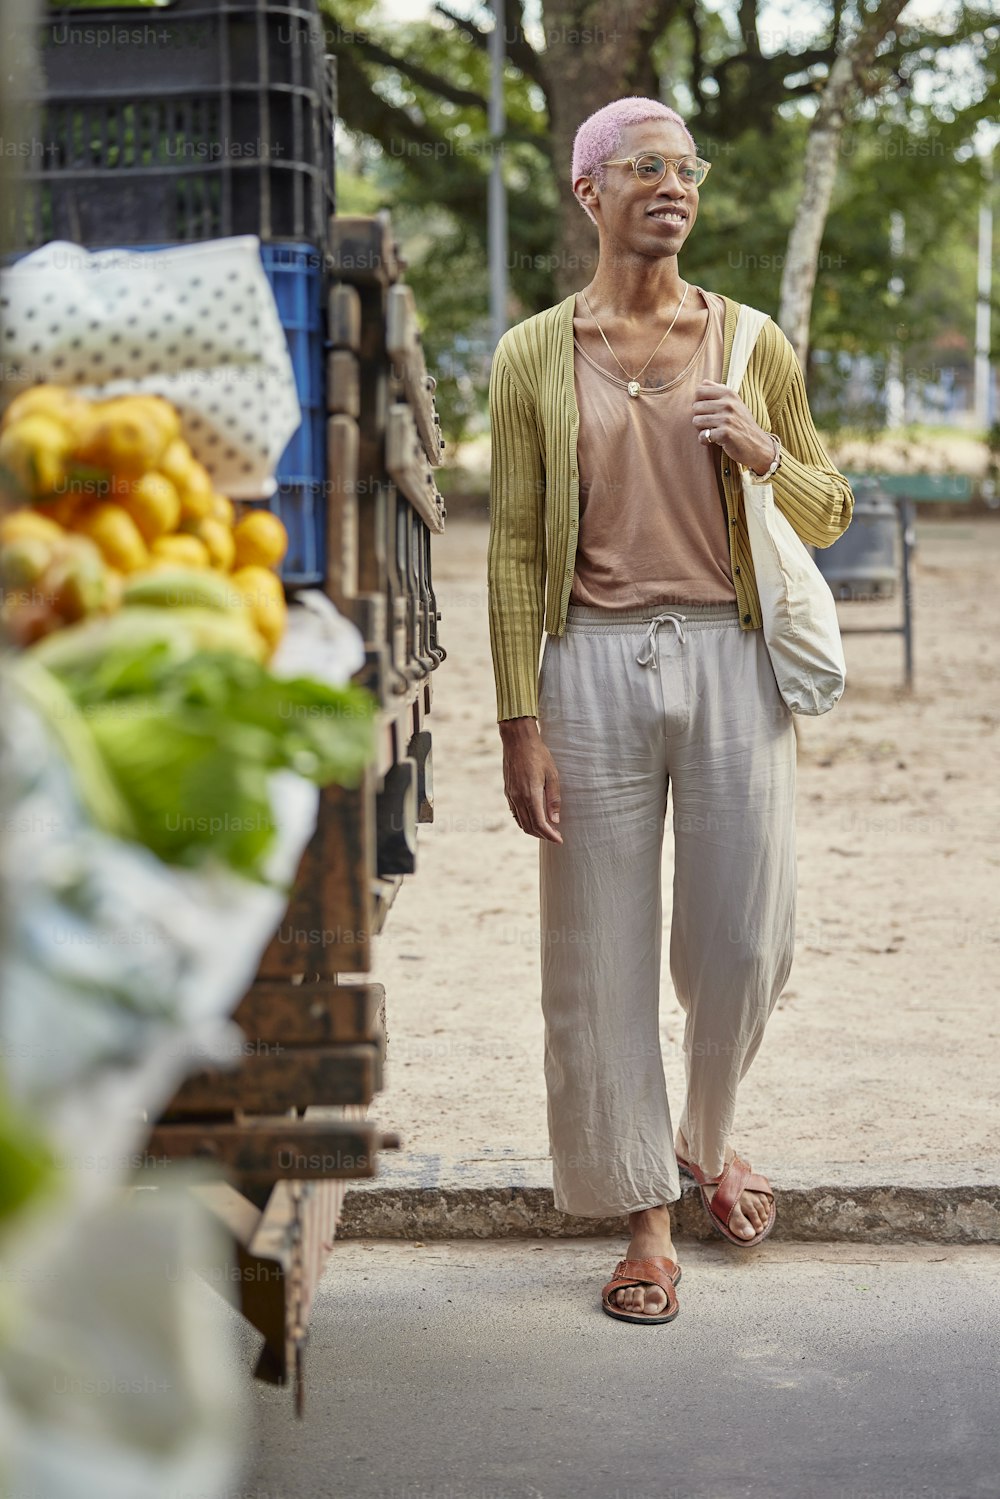 Una mujer parada frente a un puesto de frutas